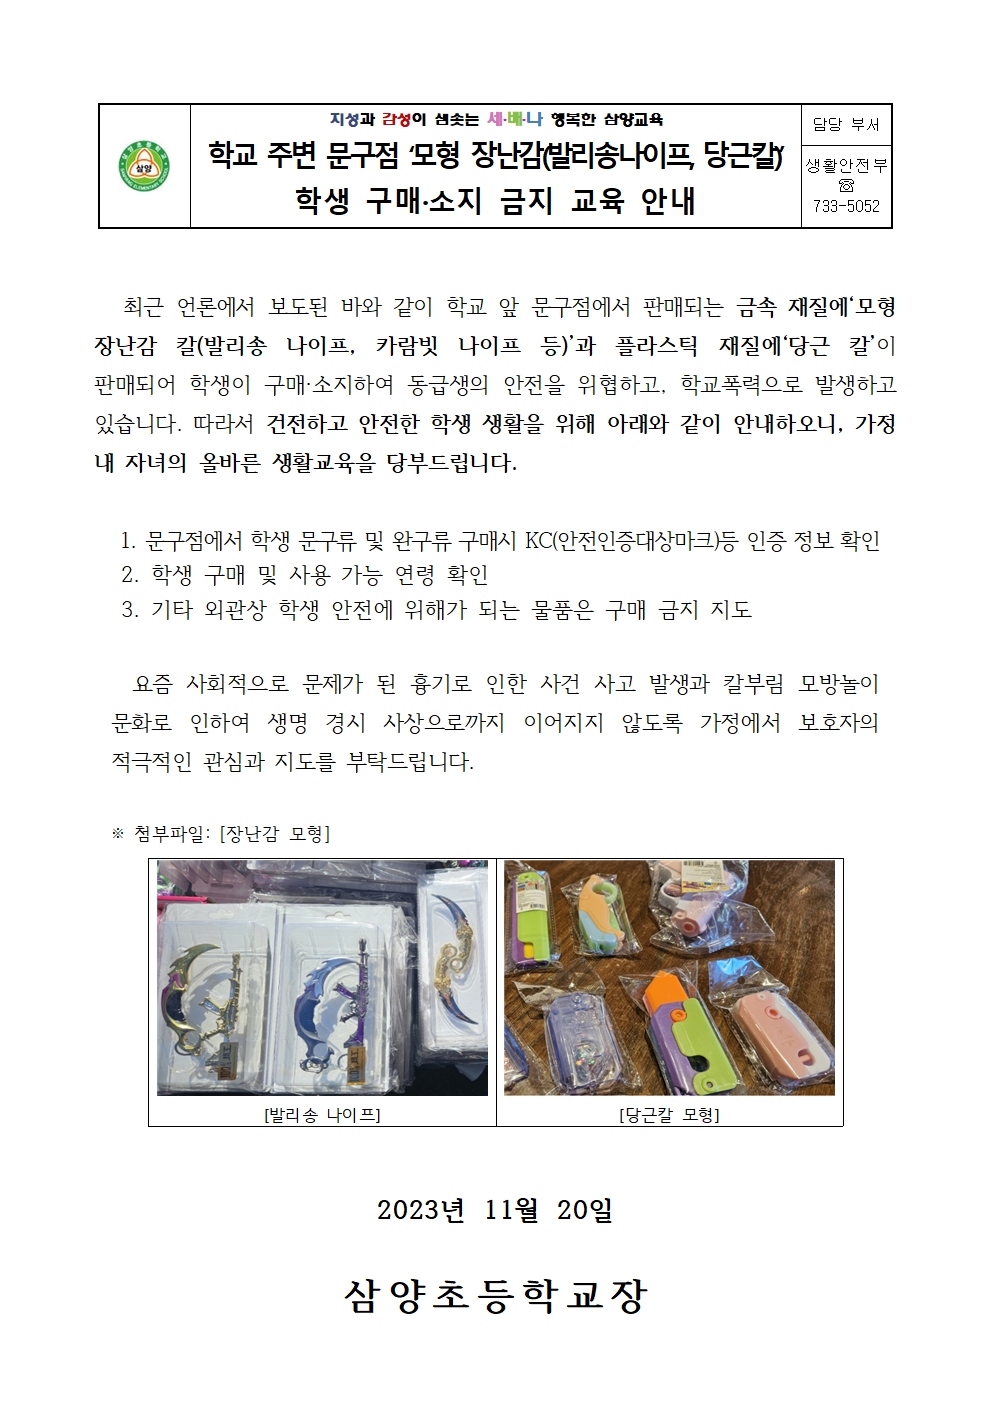 모형 장난감 구매 소지 금지 안내 가정통신문001